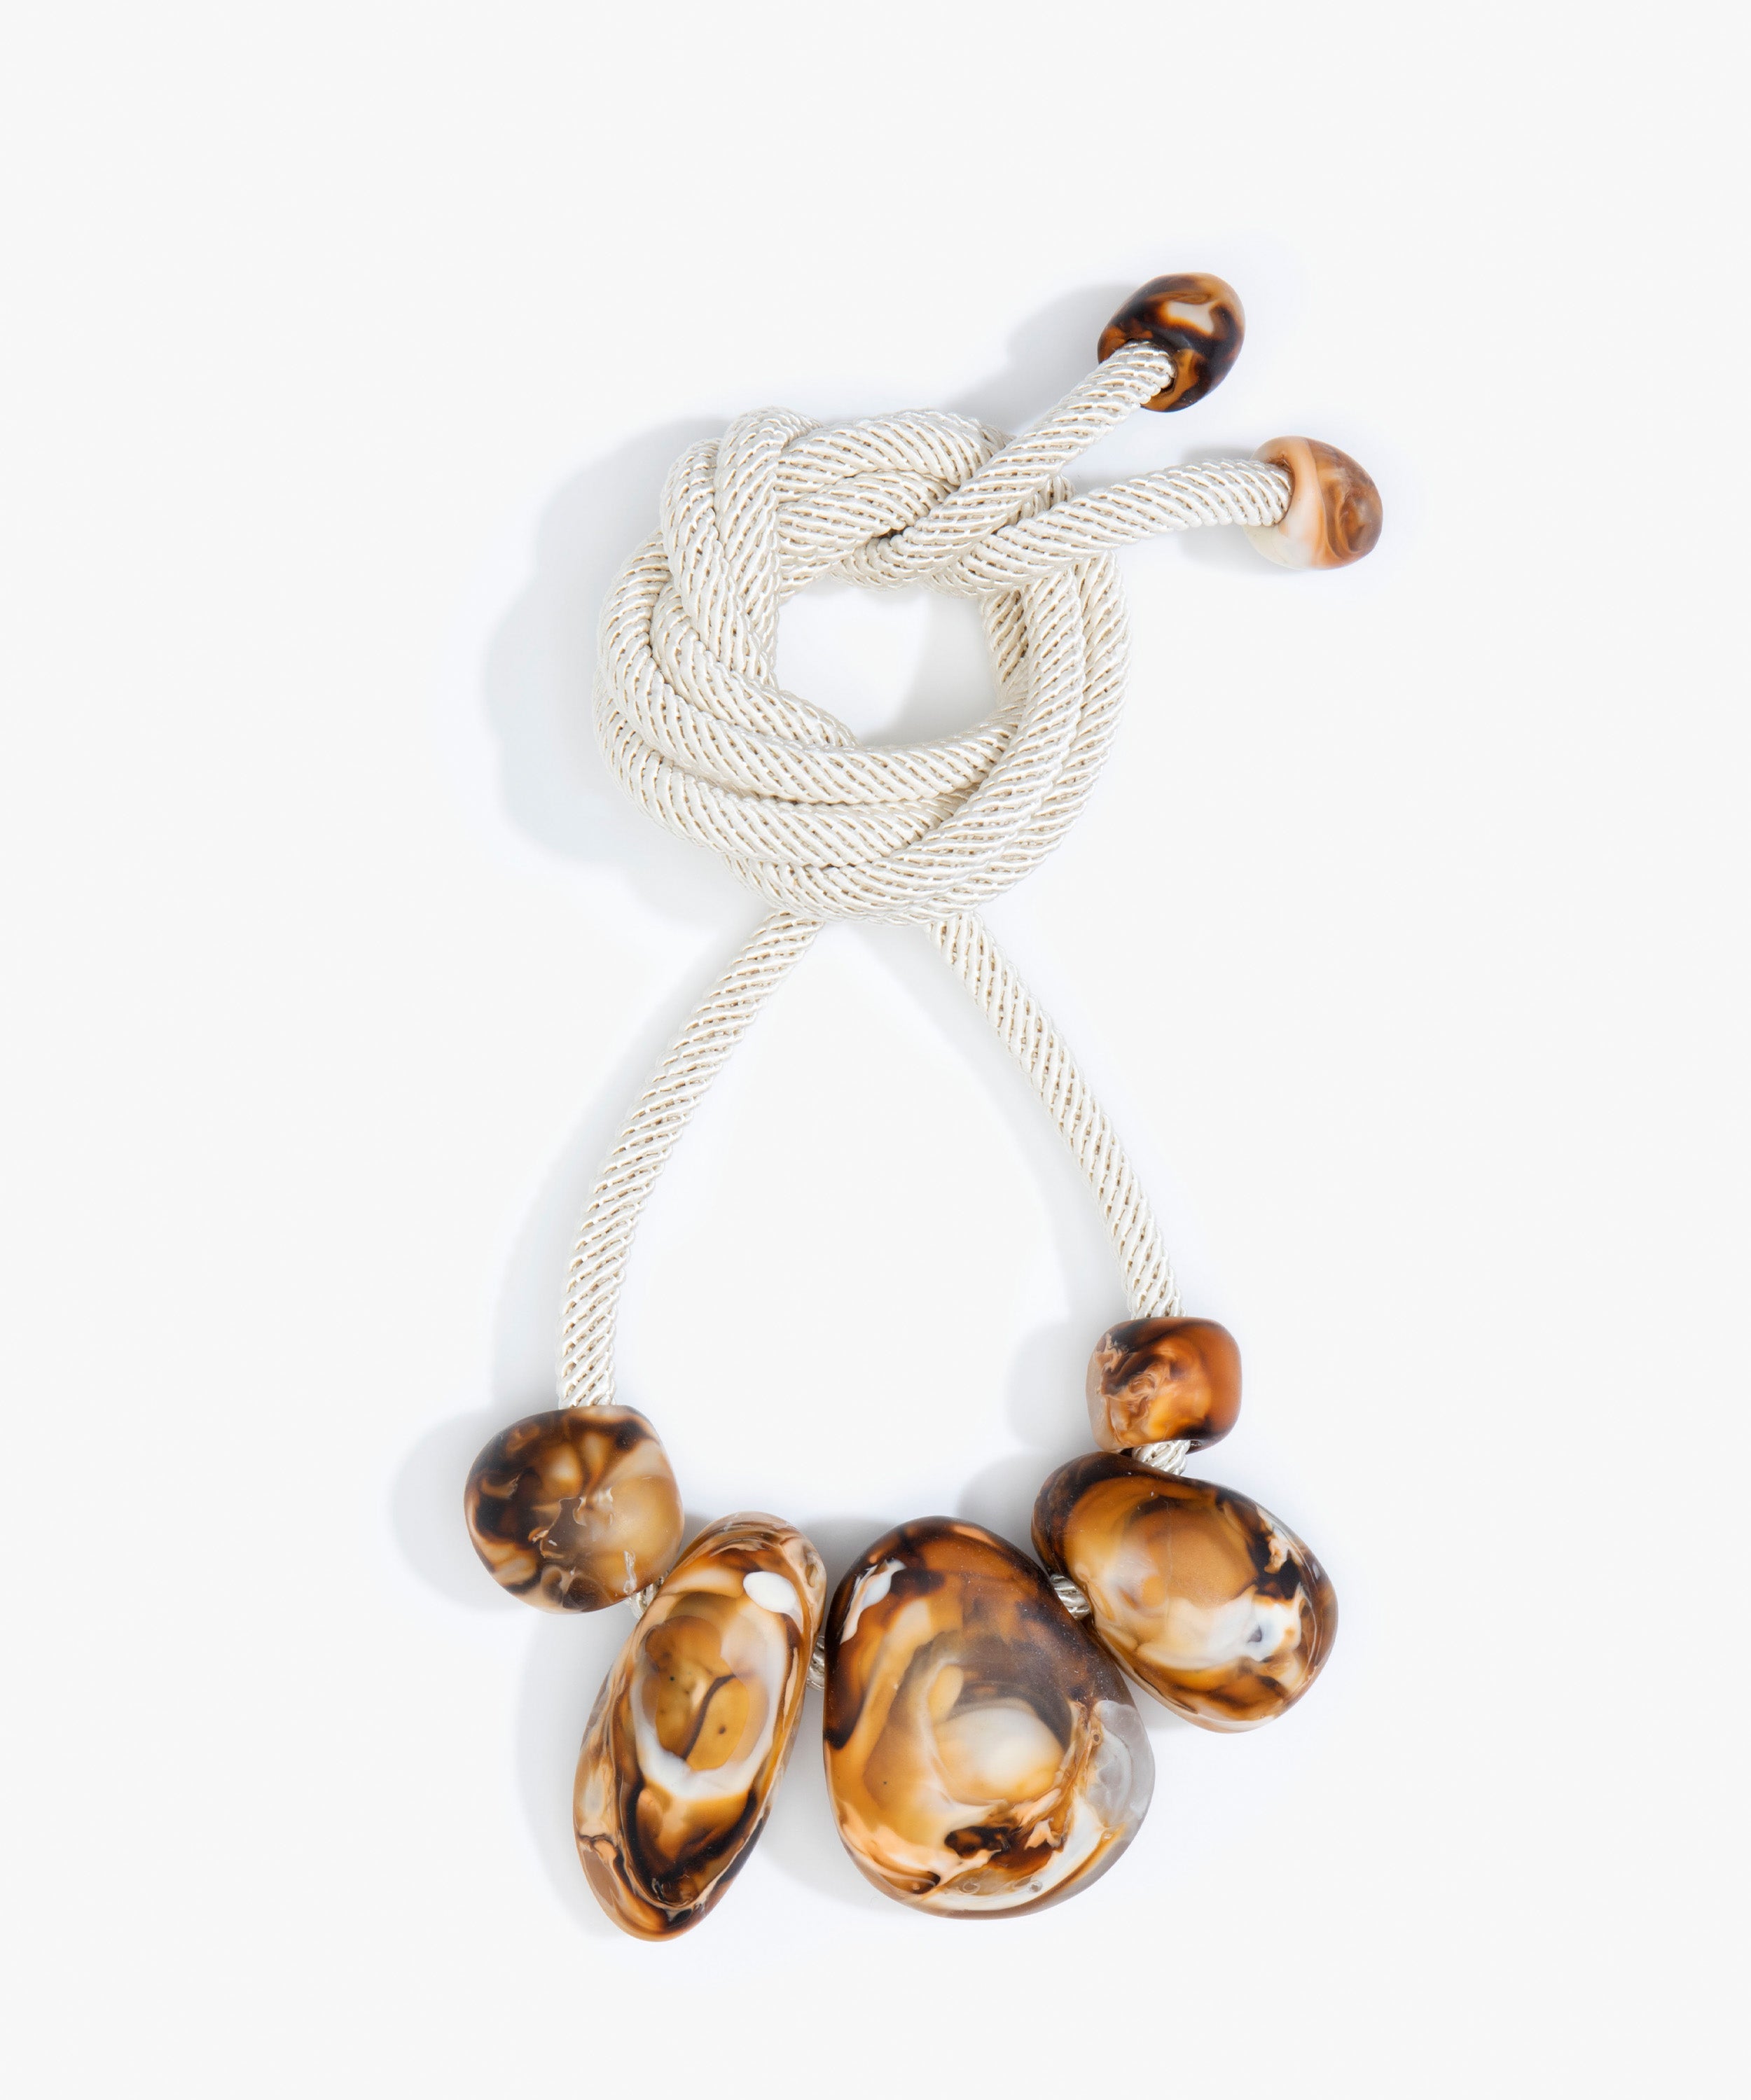 Dinosaur Designs Boulder Rock Necklace Necklaces in Light Horn color resin